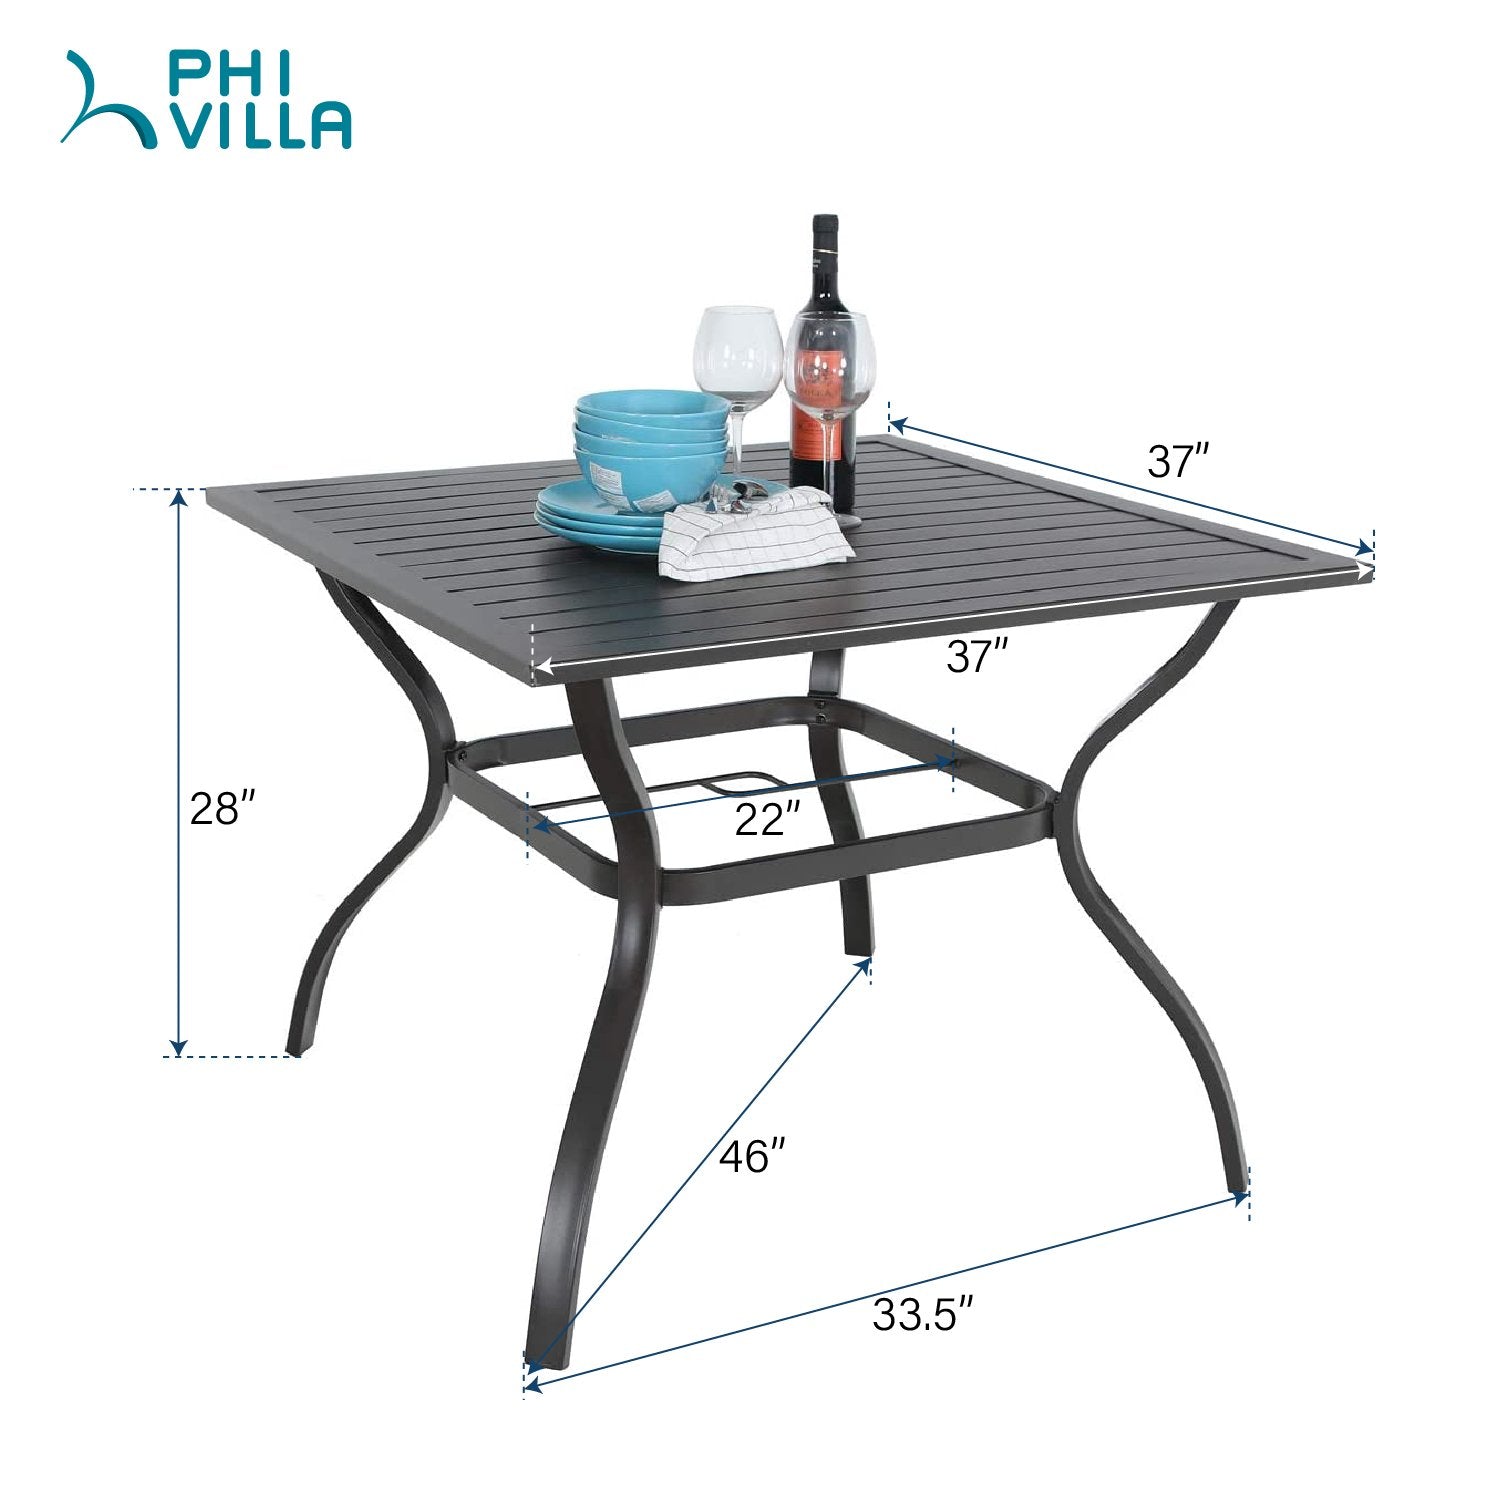 PHI VILLA 37" x 37" Square Patio Bistro Table